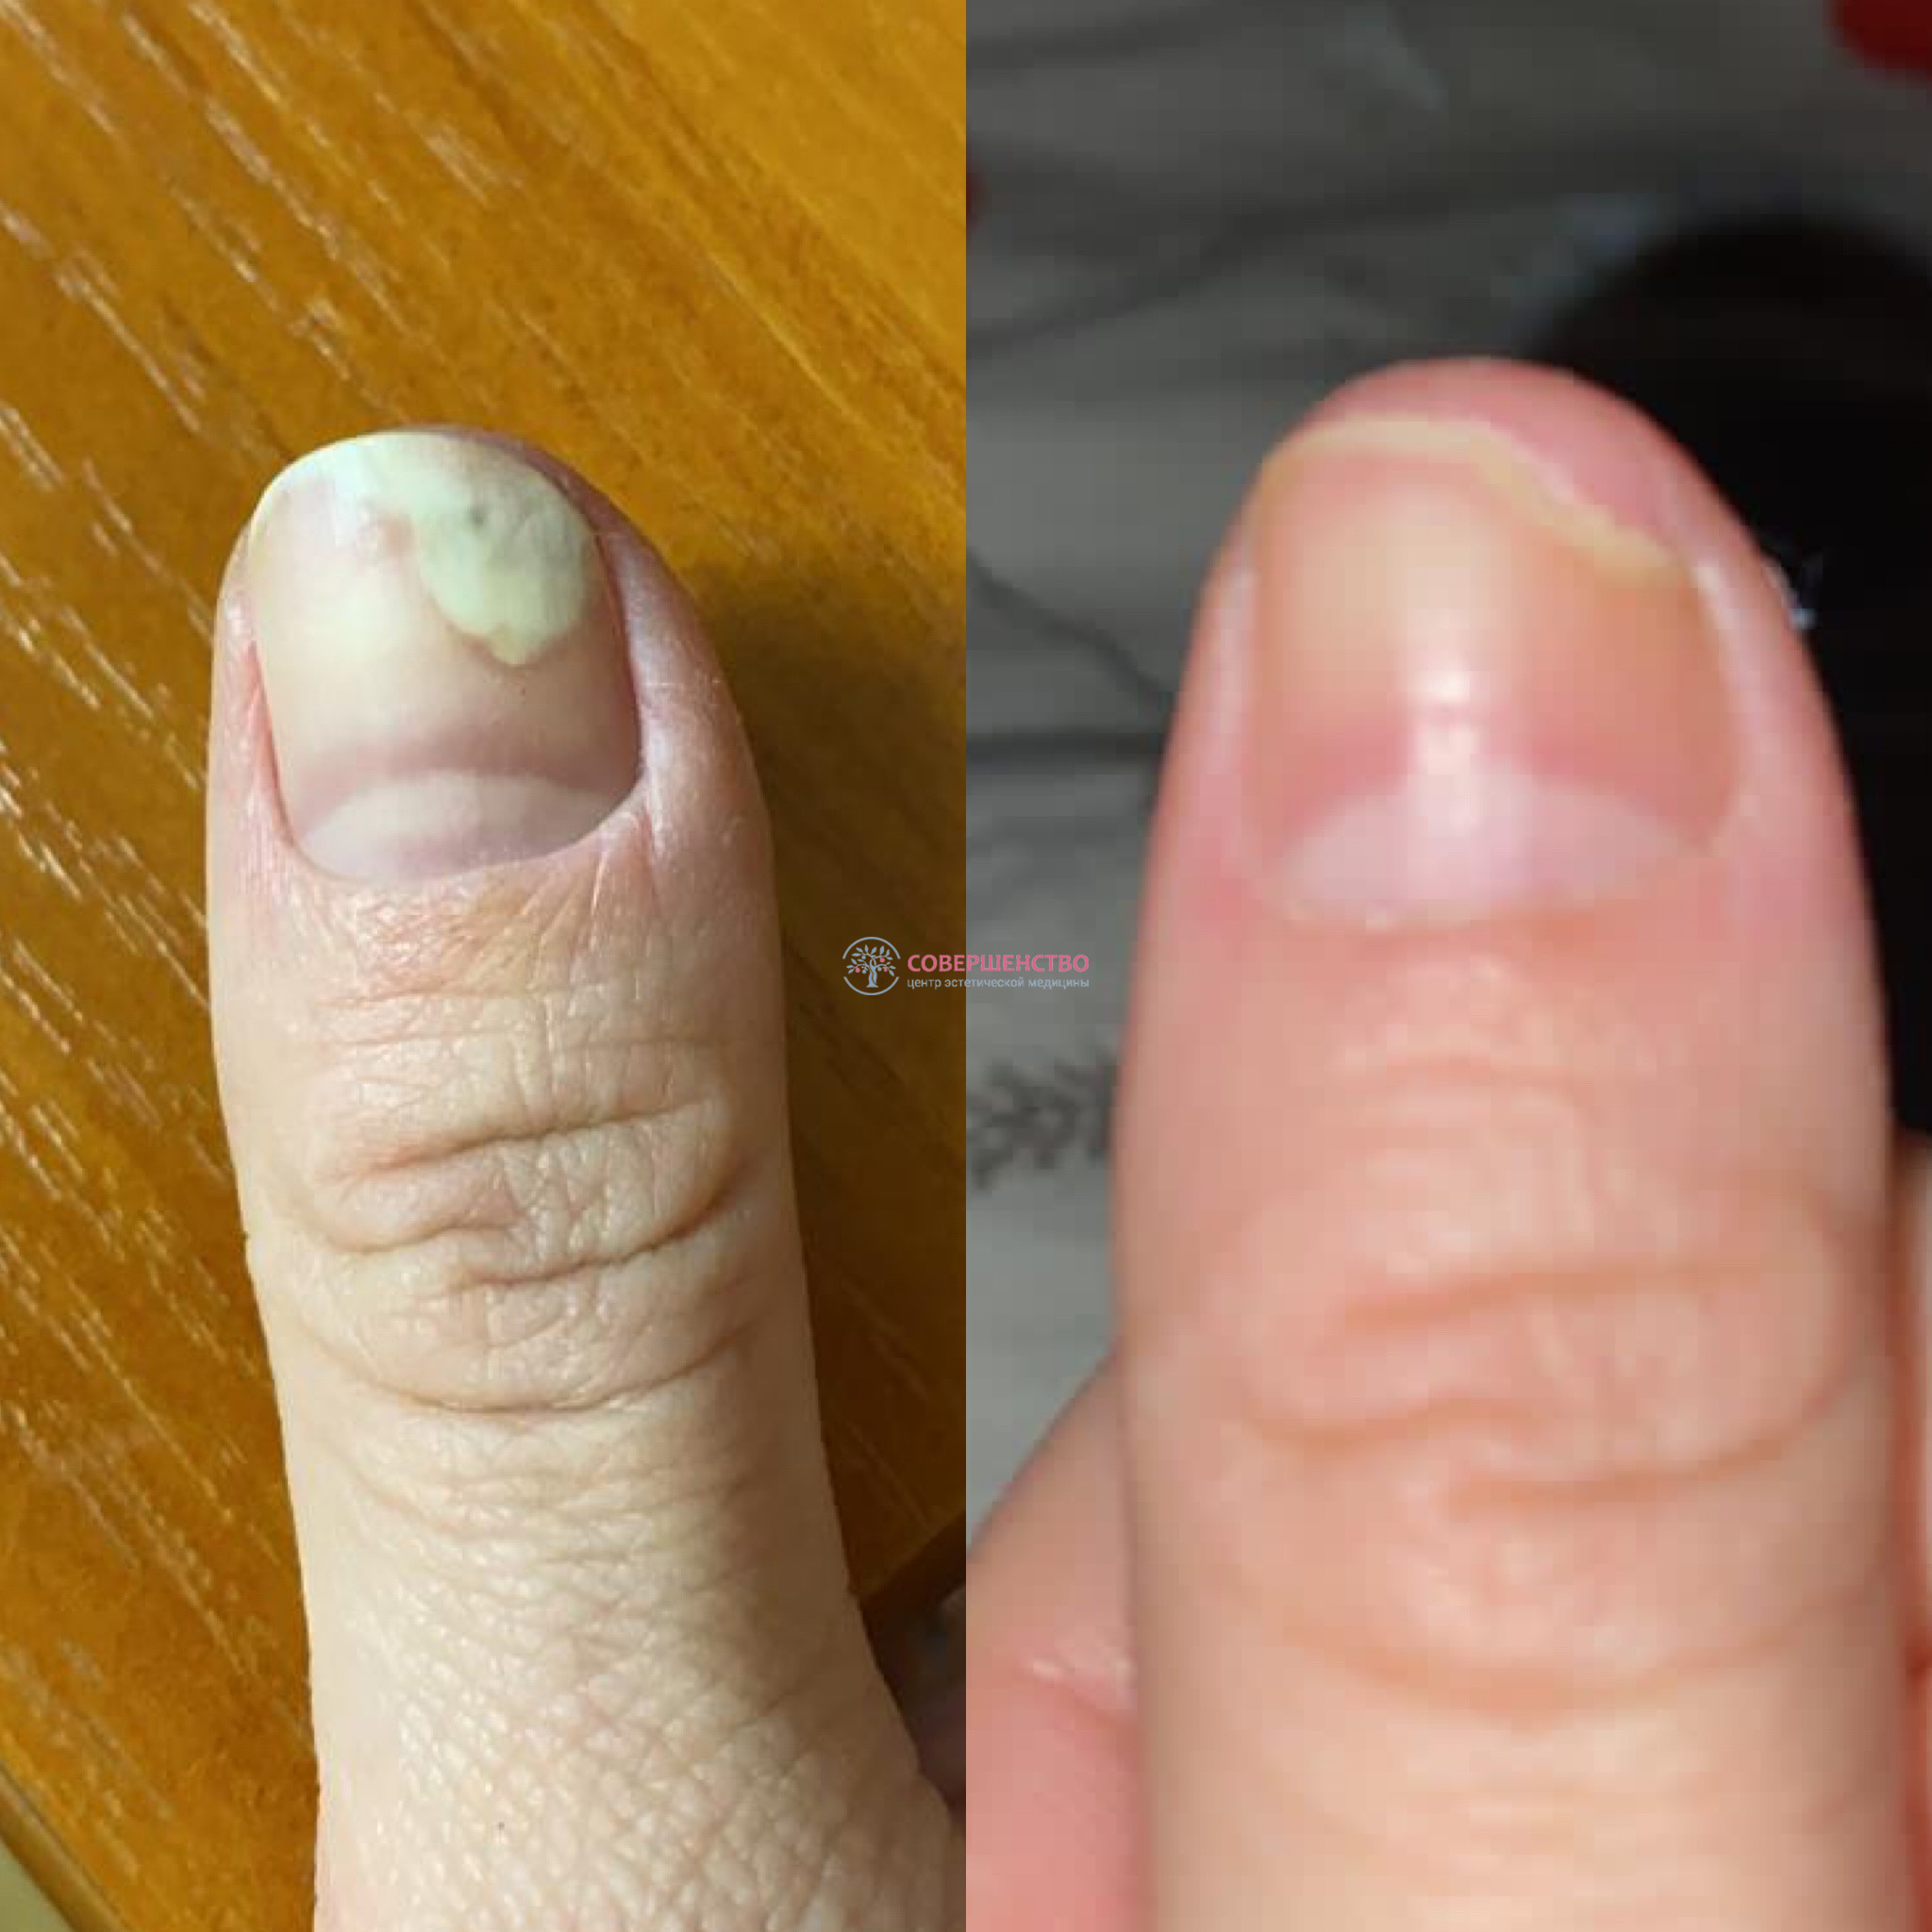 Грибок ногтей — причины, симптомы и способы лечения | Клиника Биляка